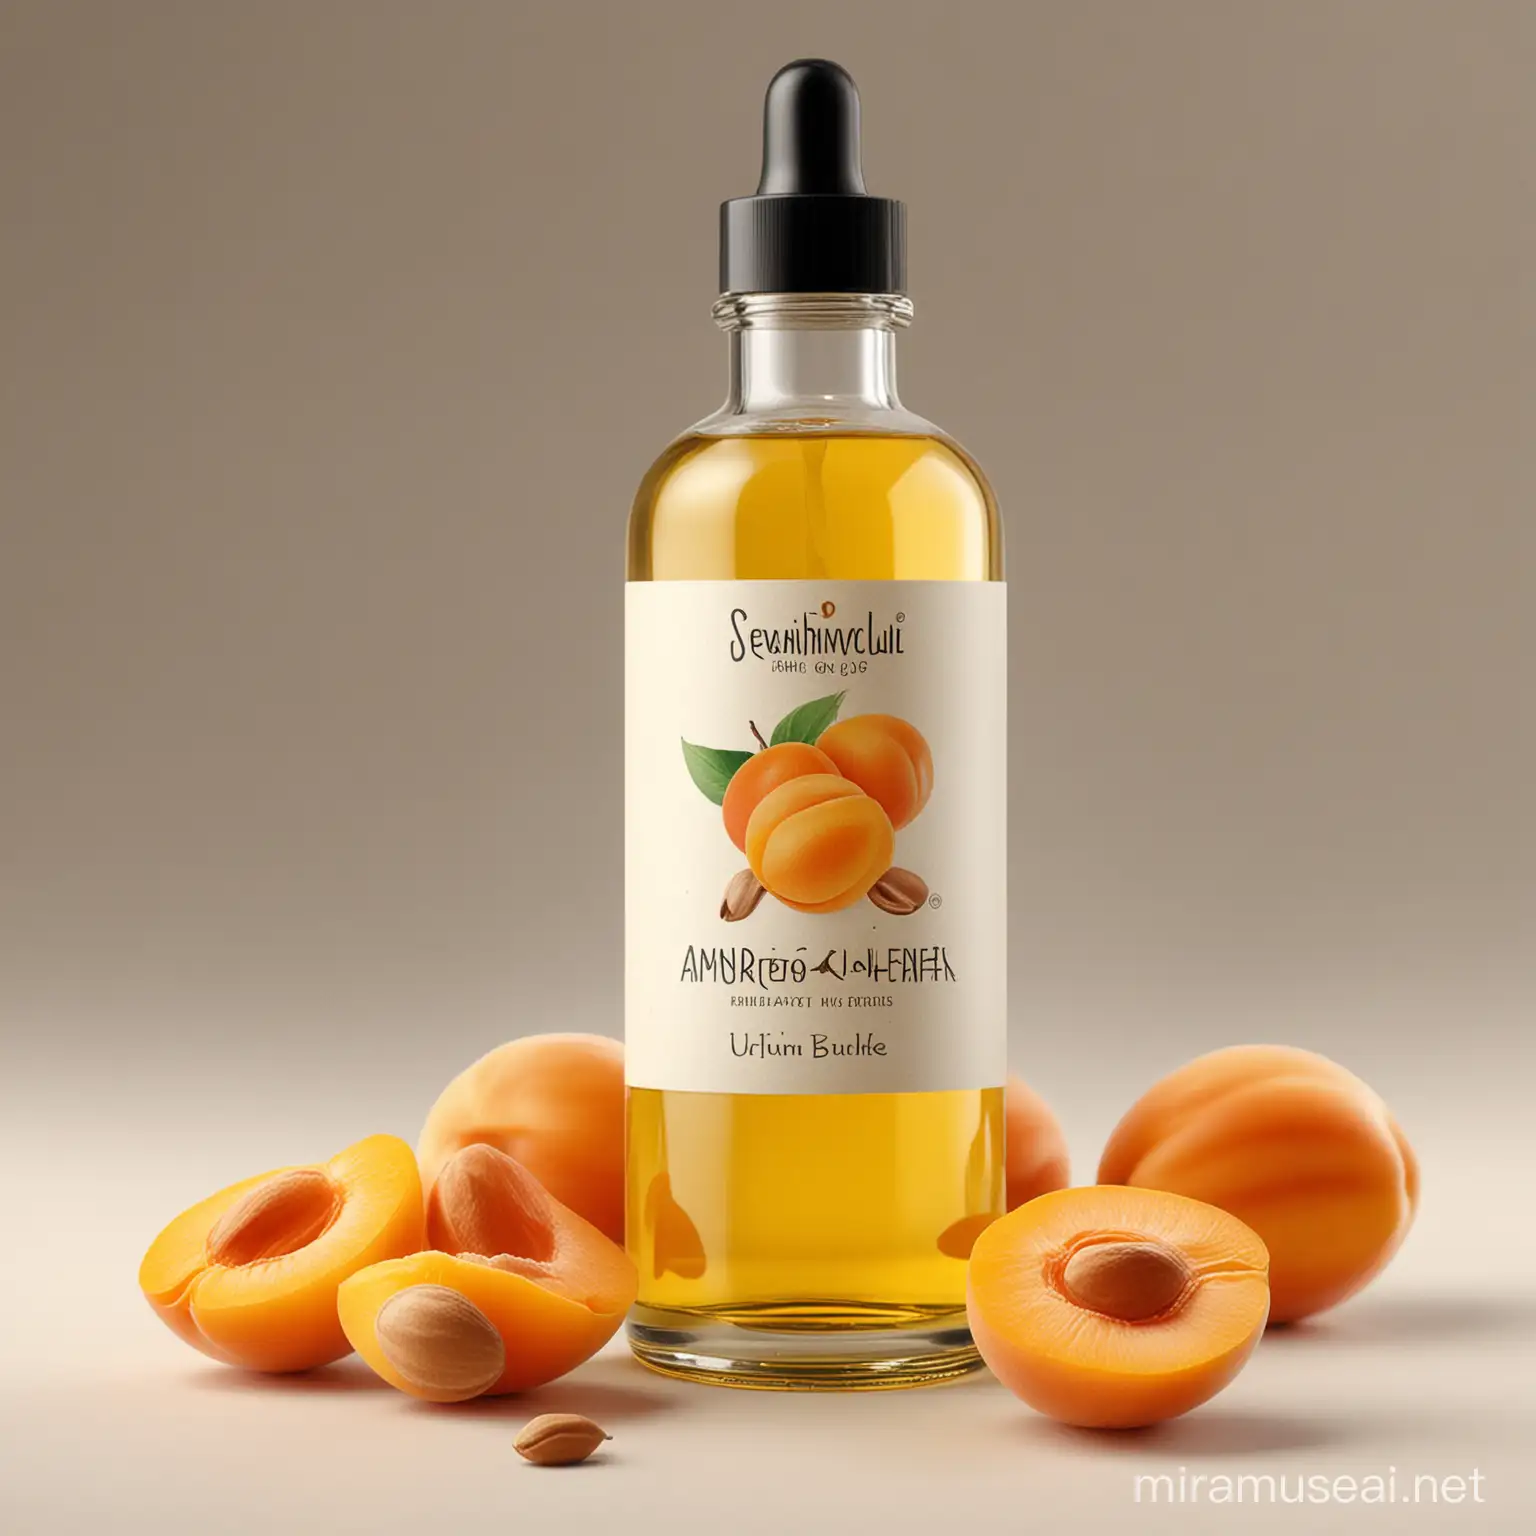 Elegant Apricot Kernel Oil Bottle Design with Floral Accents